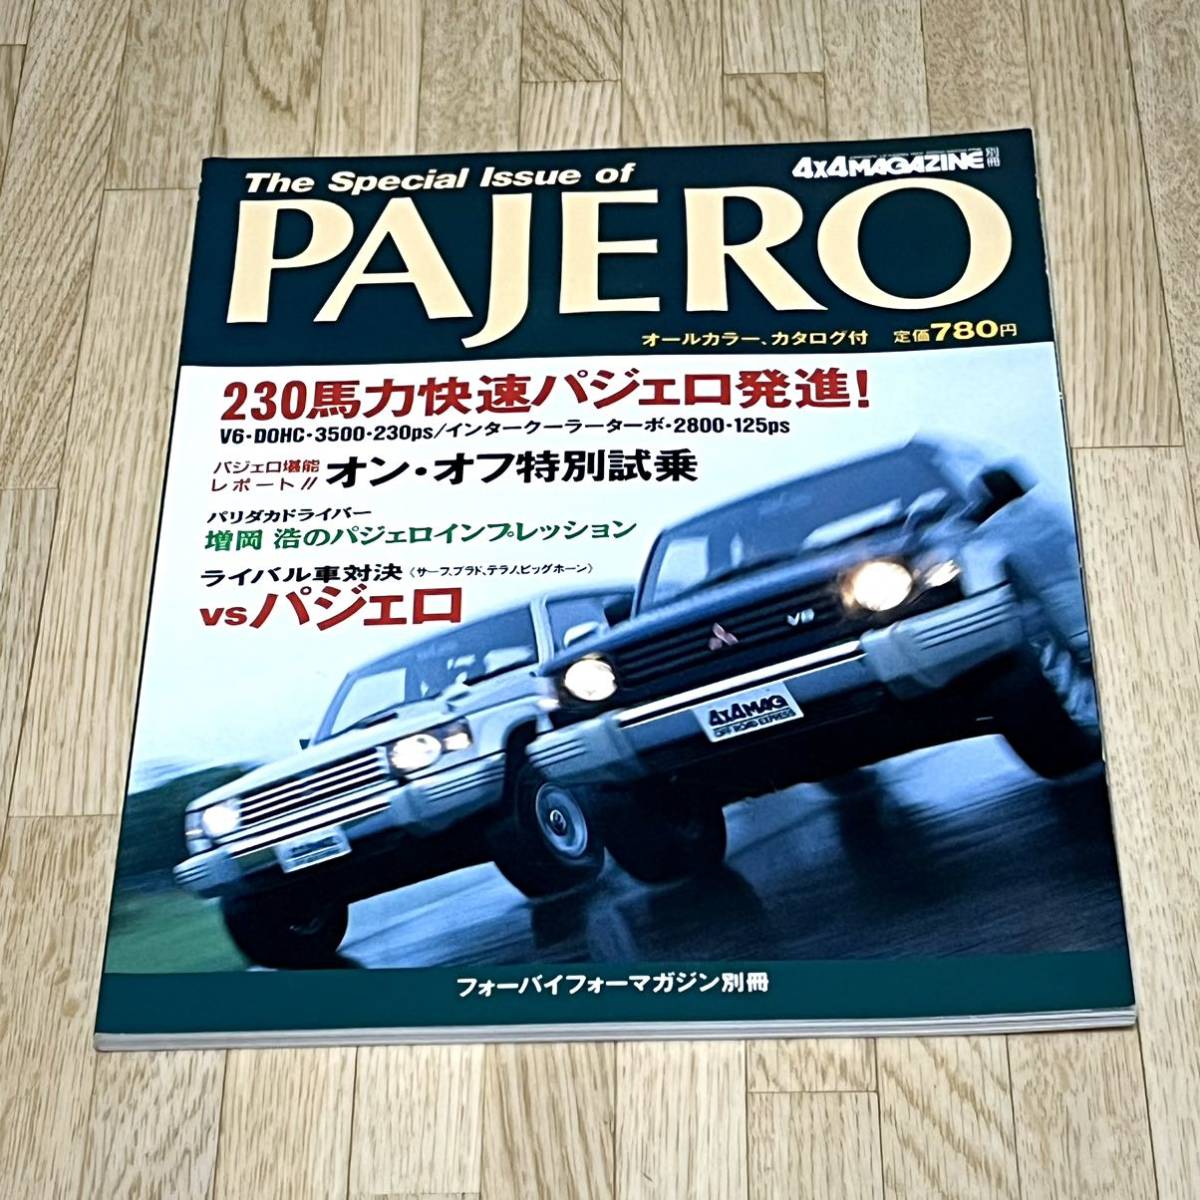 *1993 год 8 месяц 15 день выпуск four bai four журнал отдельный выпуск Pajero специальный выпуск номер 230 лошадиные силы . пробег Pajero. все *